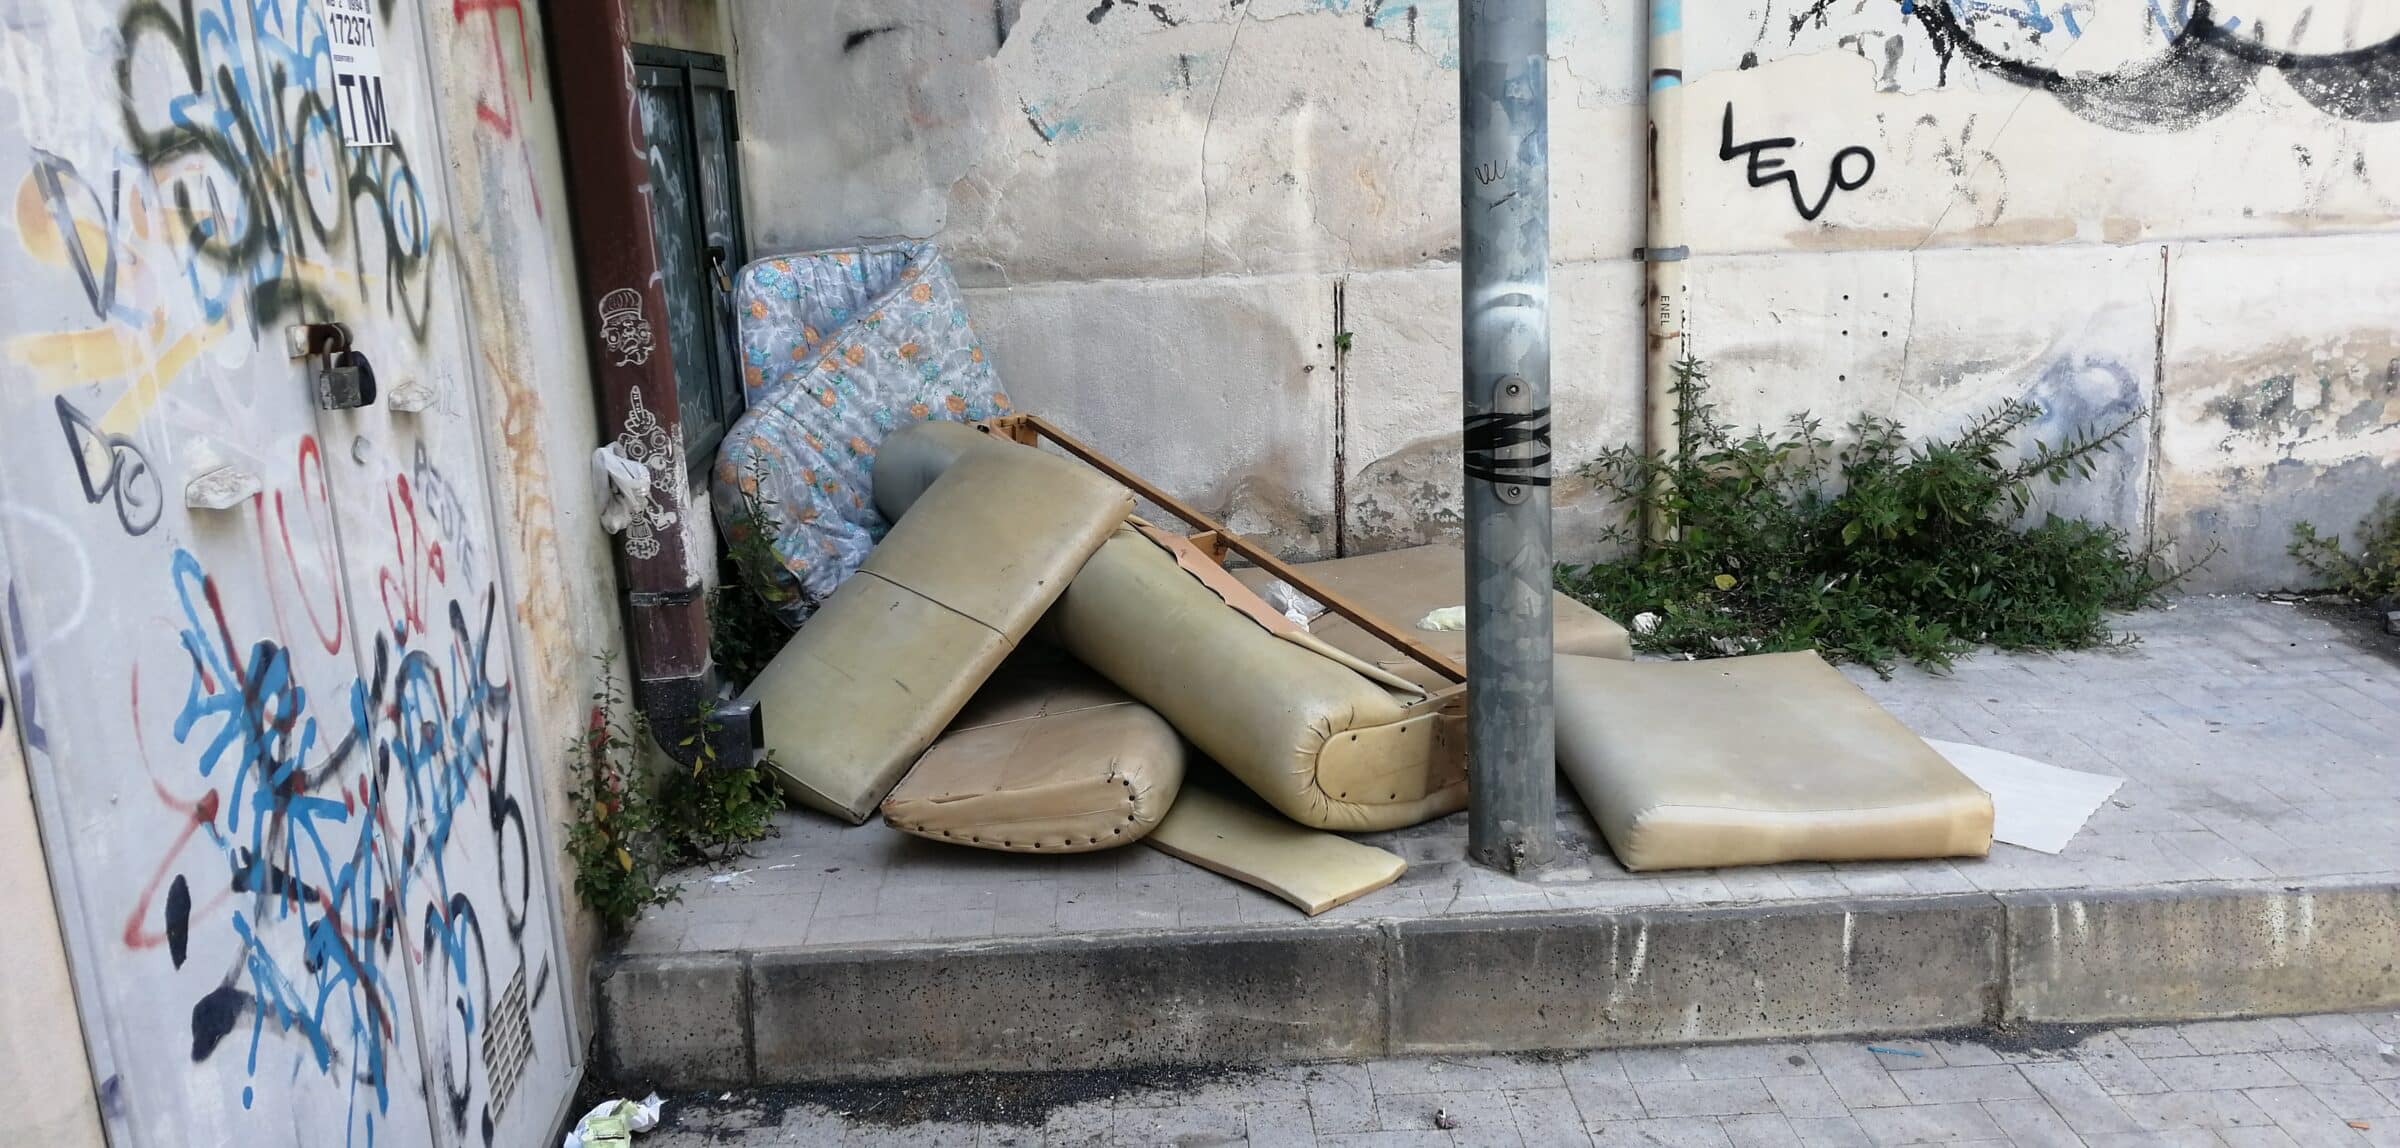 Auto abbandonate, vecchi materassi e spazzatura a volontà: degrado in via Sisto, urge intervento